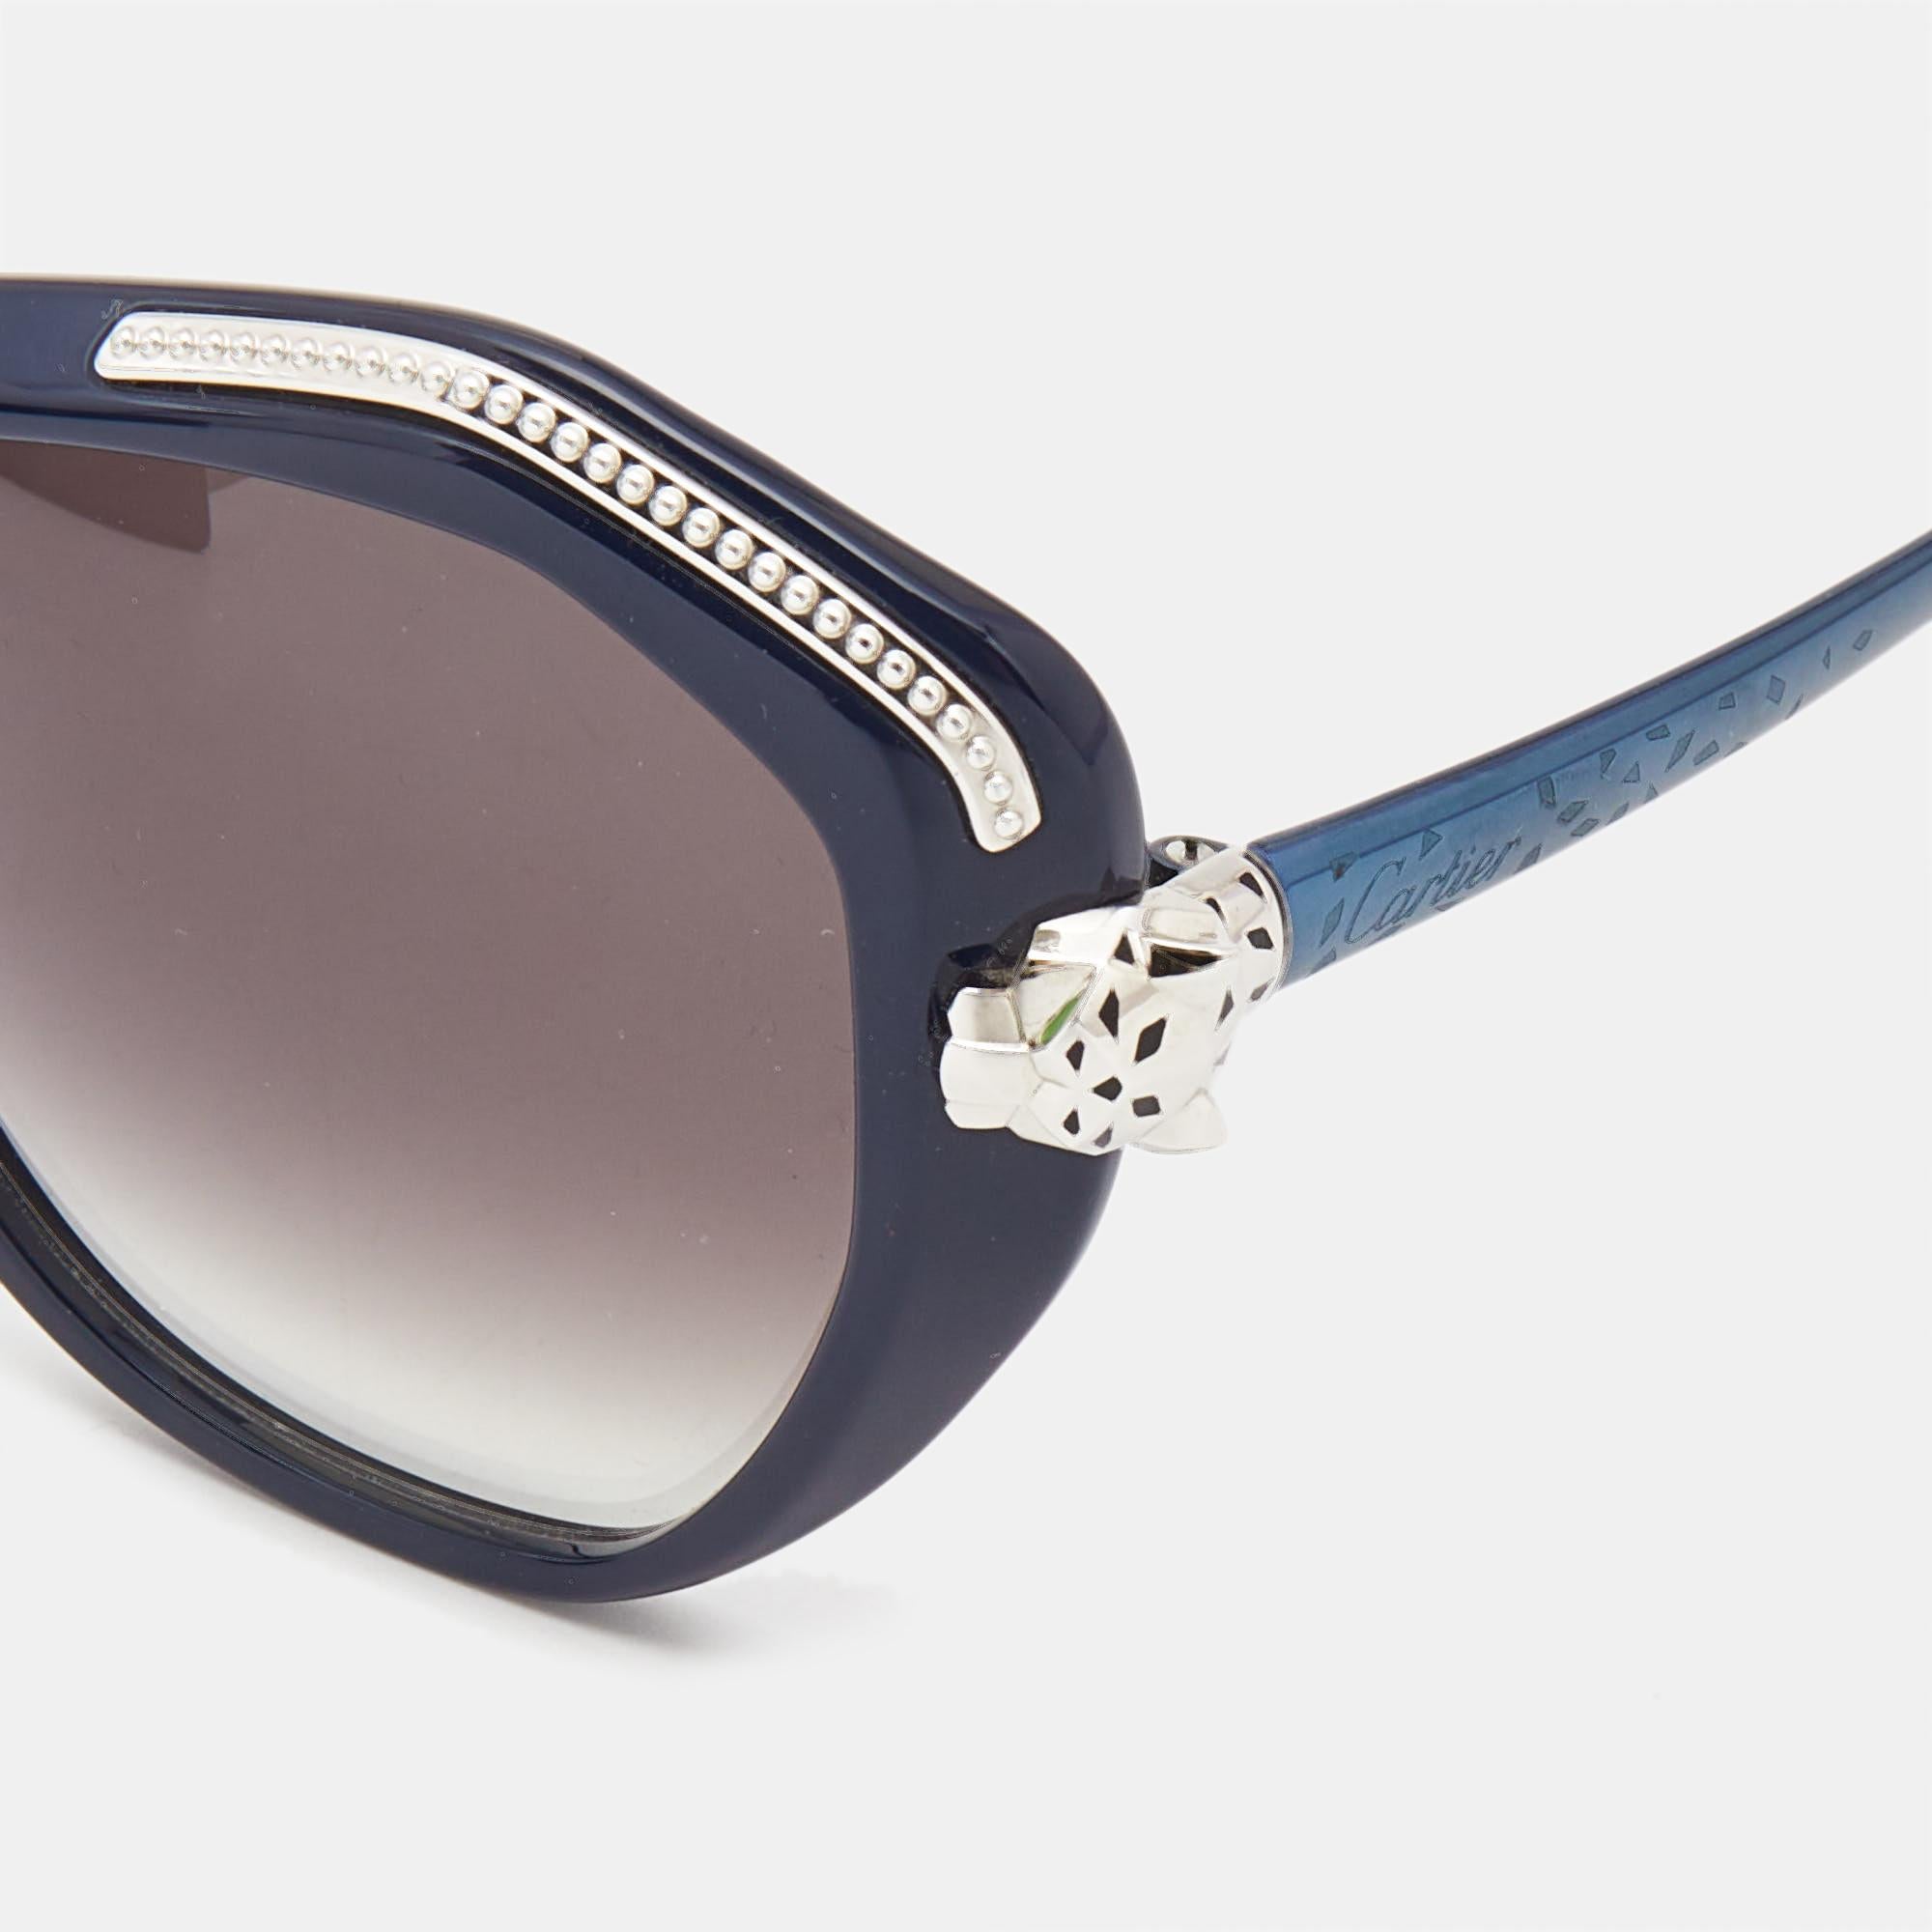 Wir sehen die Details dieser exquisiten Designer-Sonnenbrille, die aus edlen Materialien gefertigt ist. Die Sonnenbrille ist luxuriös in der Anmutung und praktisch im Gebrauch.

Enthält: Original Etui